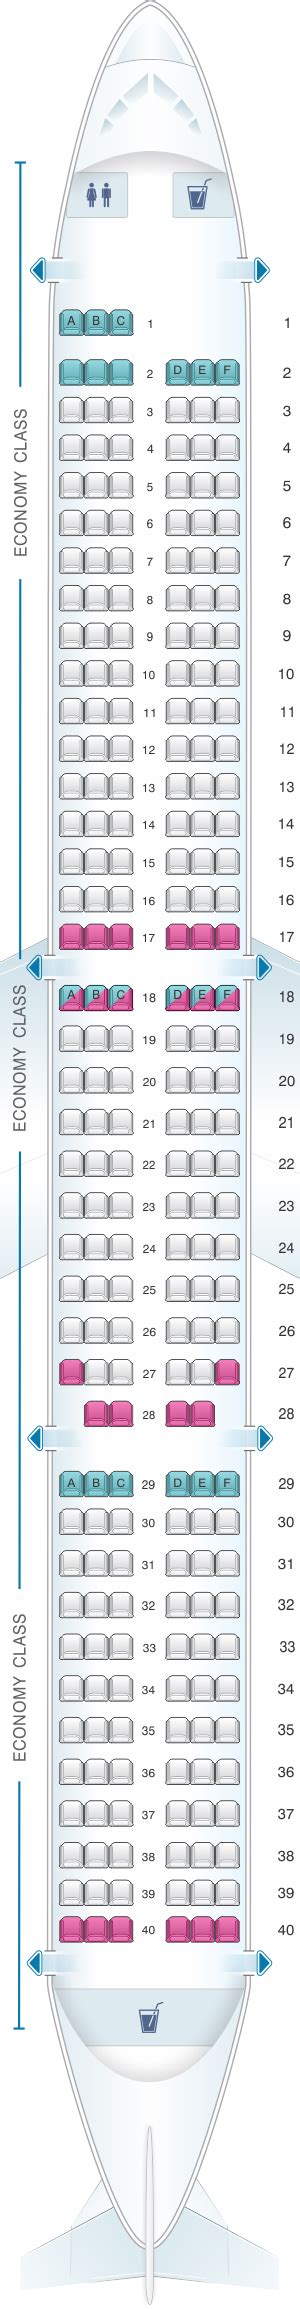 Airbus A320 Easyjet Seating Plan